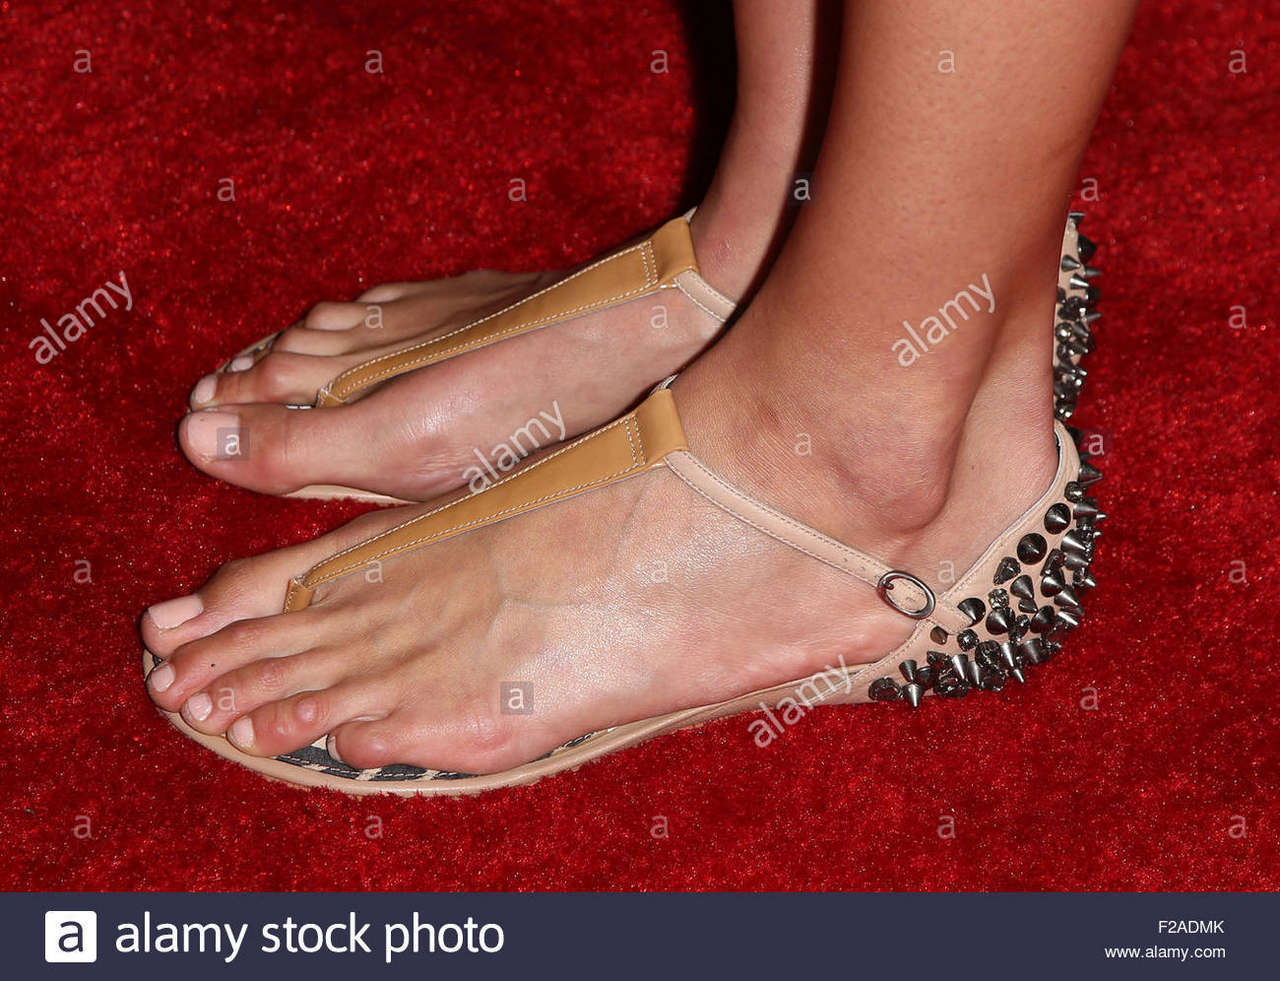 Alix Klineman Feet